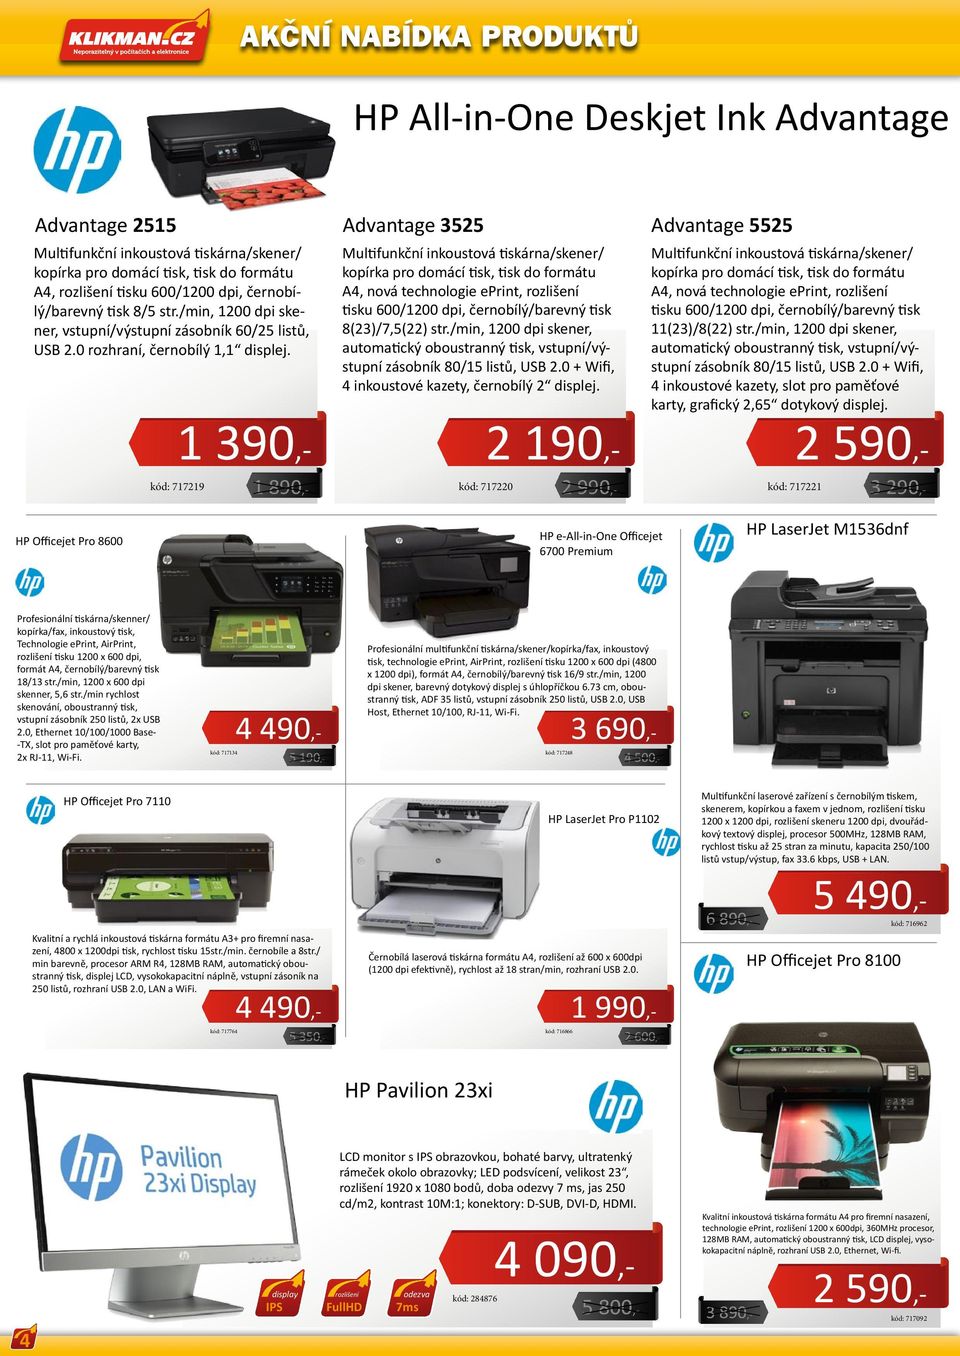 Multifunkční inkoustová tiskárna/skener/ kopírka pro domácí tisk tisk do formátu A4 nová technologie eprint rozlišení tisku 6/1 dpi černobílý/barevný tisk 8(3)/75() str.